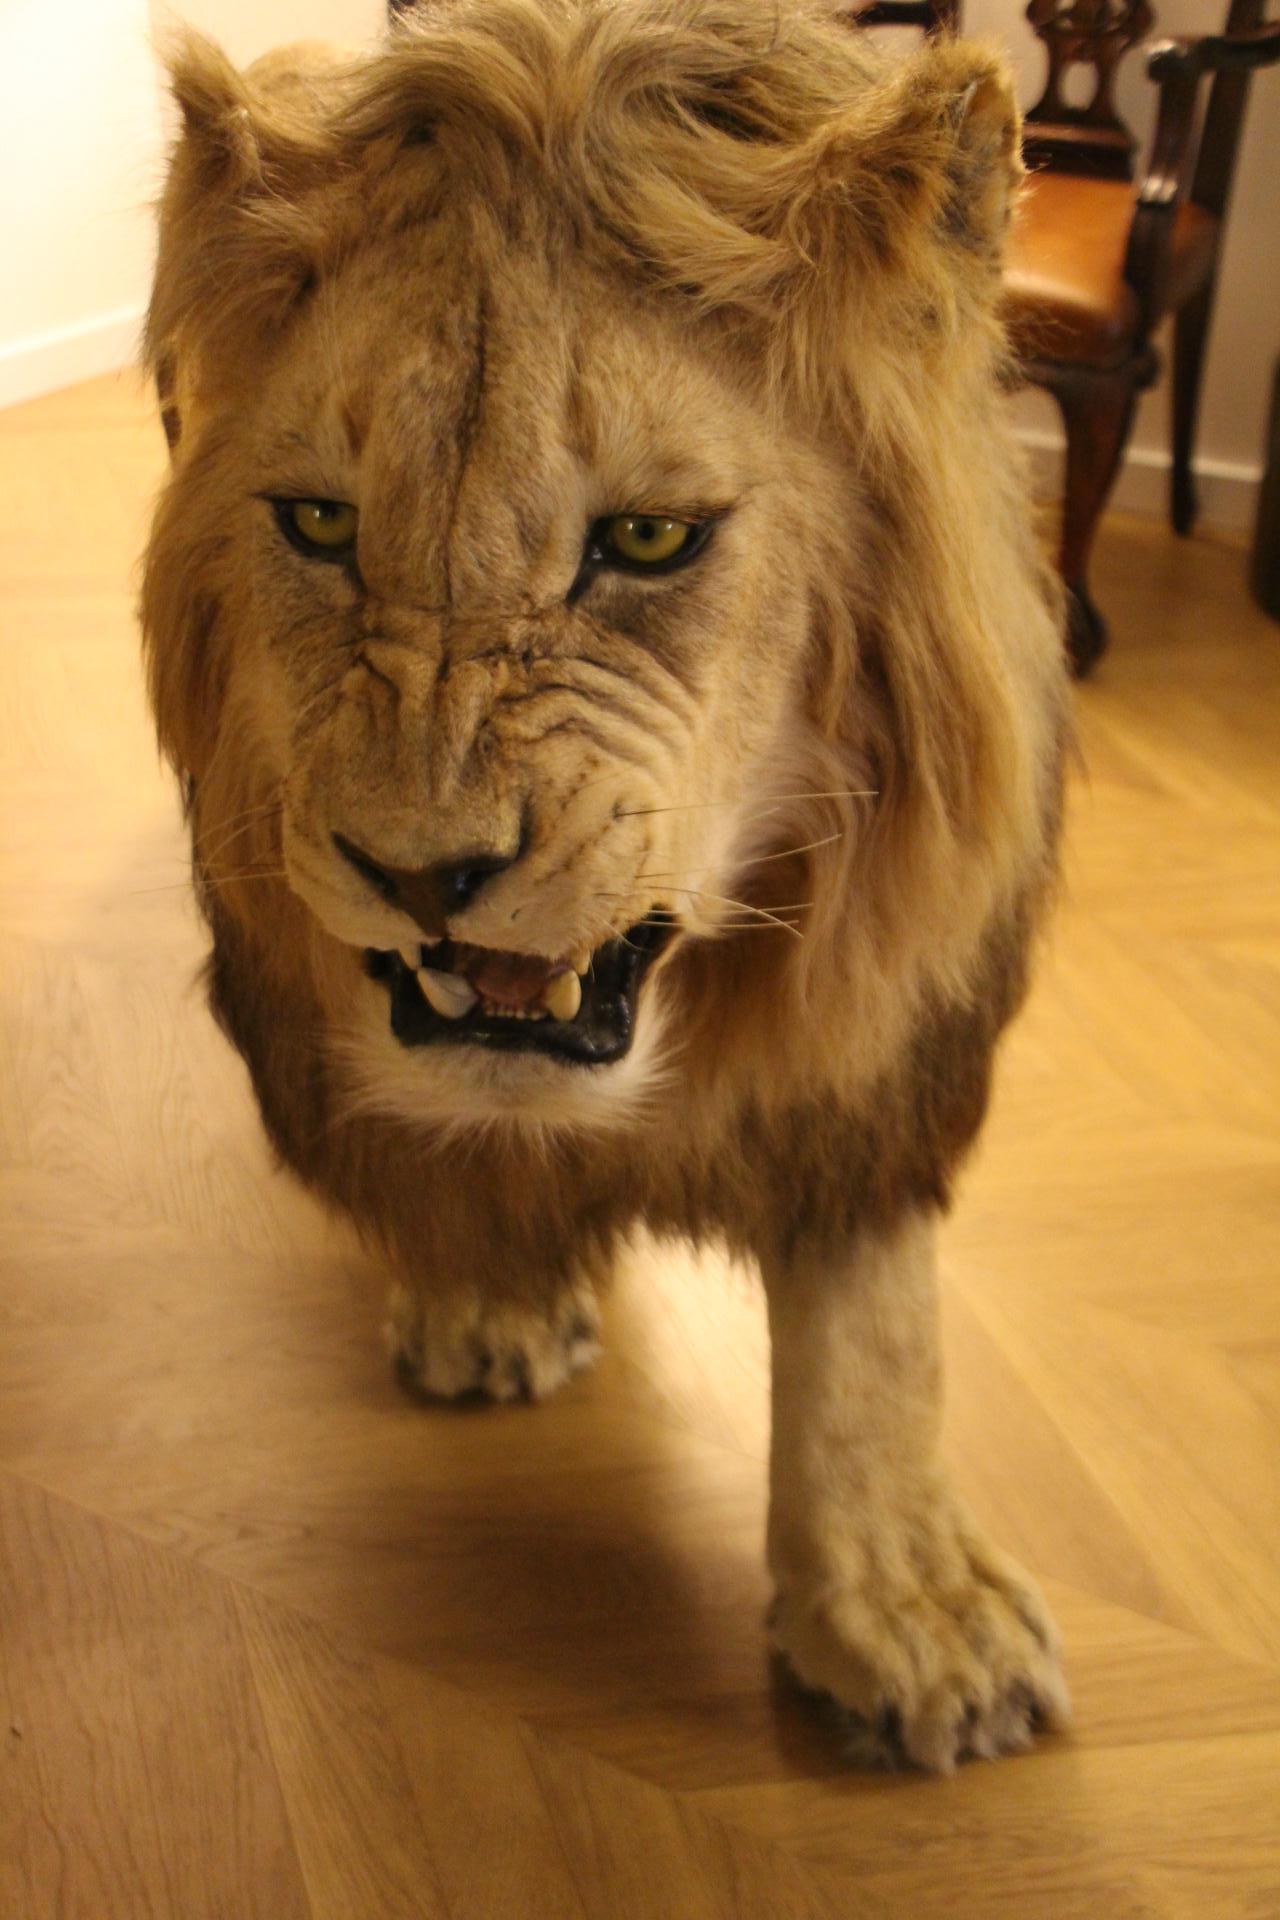 Dies ist eine hervorragende frühe 21. Jahrhundert Taxidermie eines afrikanischen Löwen, komplett mit allen relevanten Papieren. Der Löwe steht in einer schönen Jagdpose und hat eine beeindruckende Höhe von 105 cm und eine Länge von 246 cm. Es ist